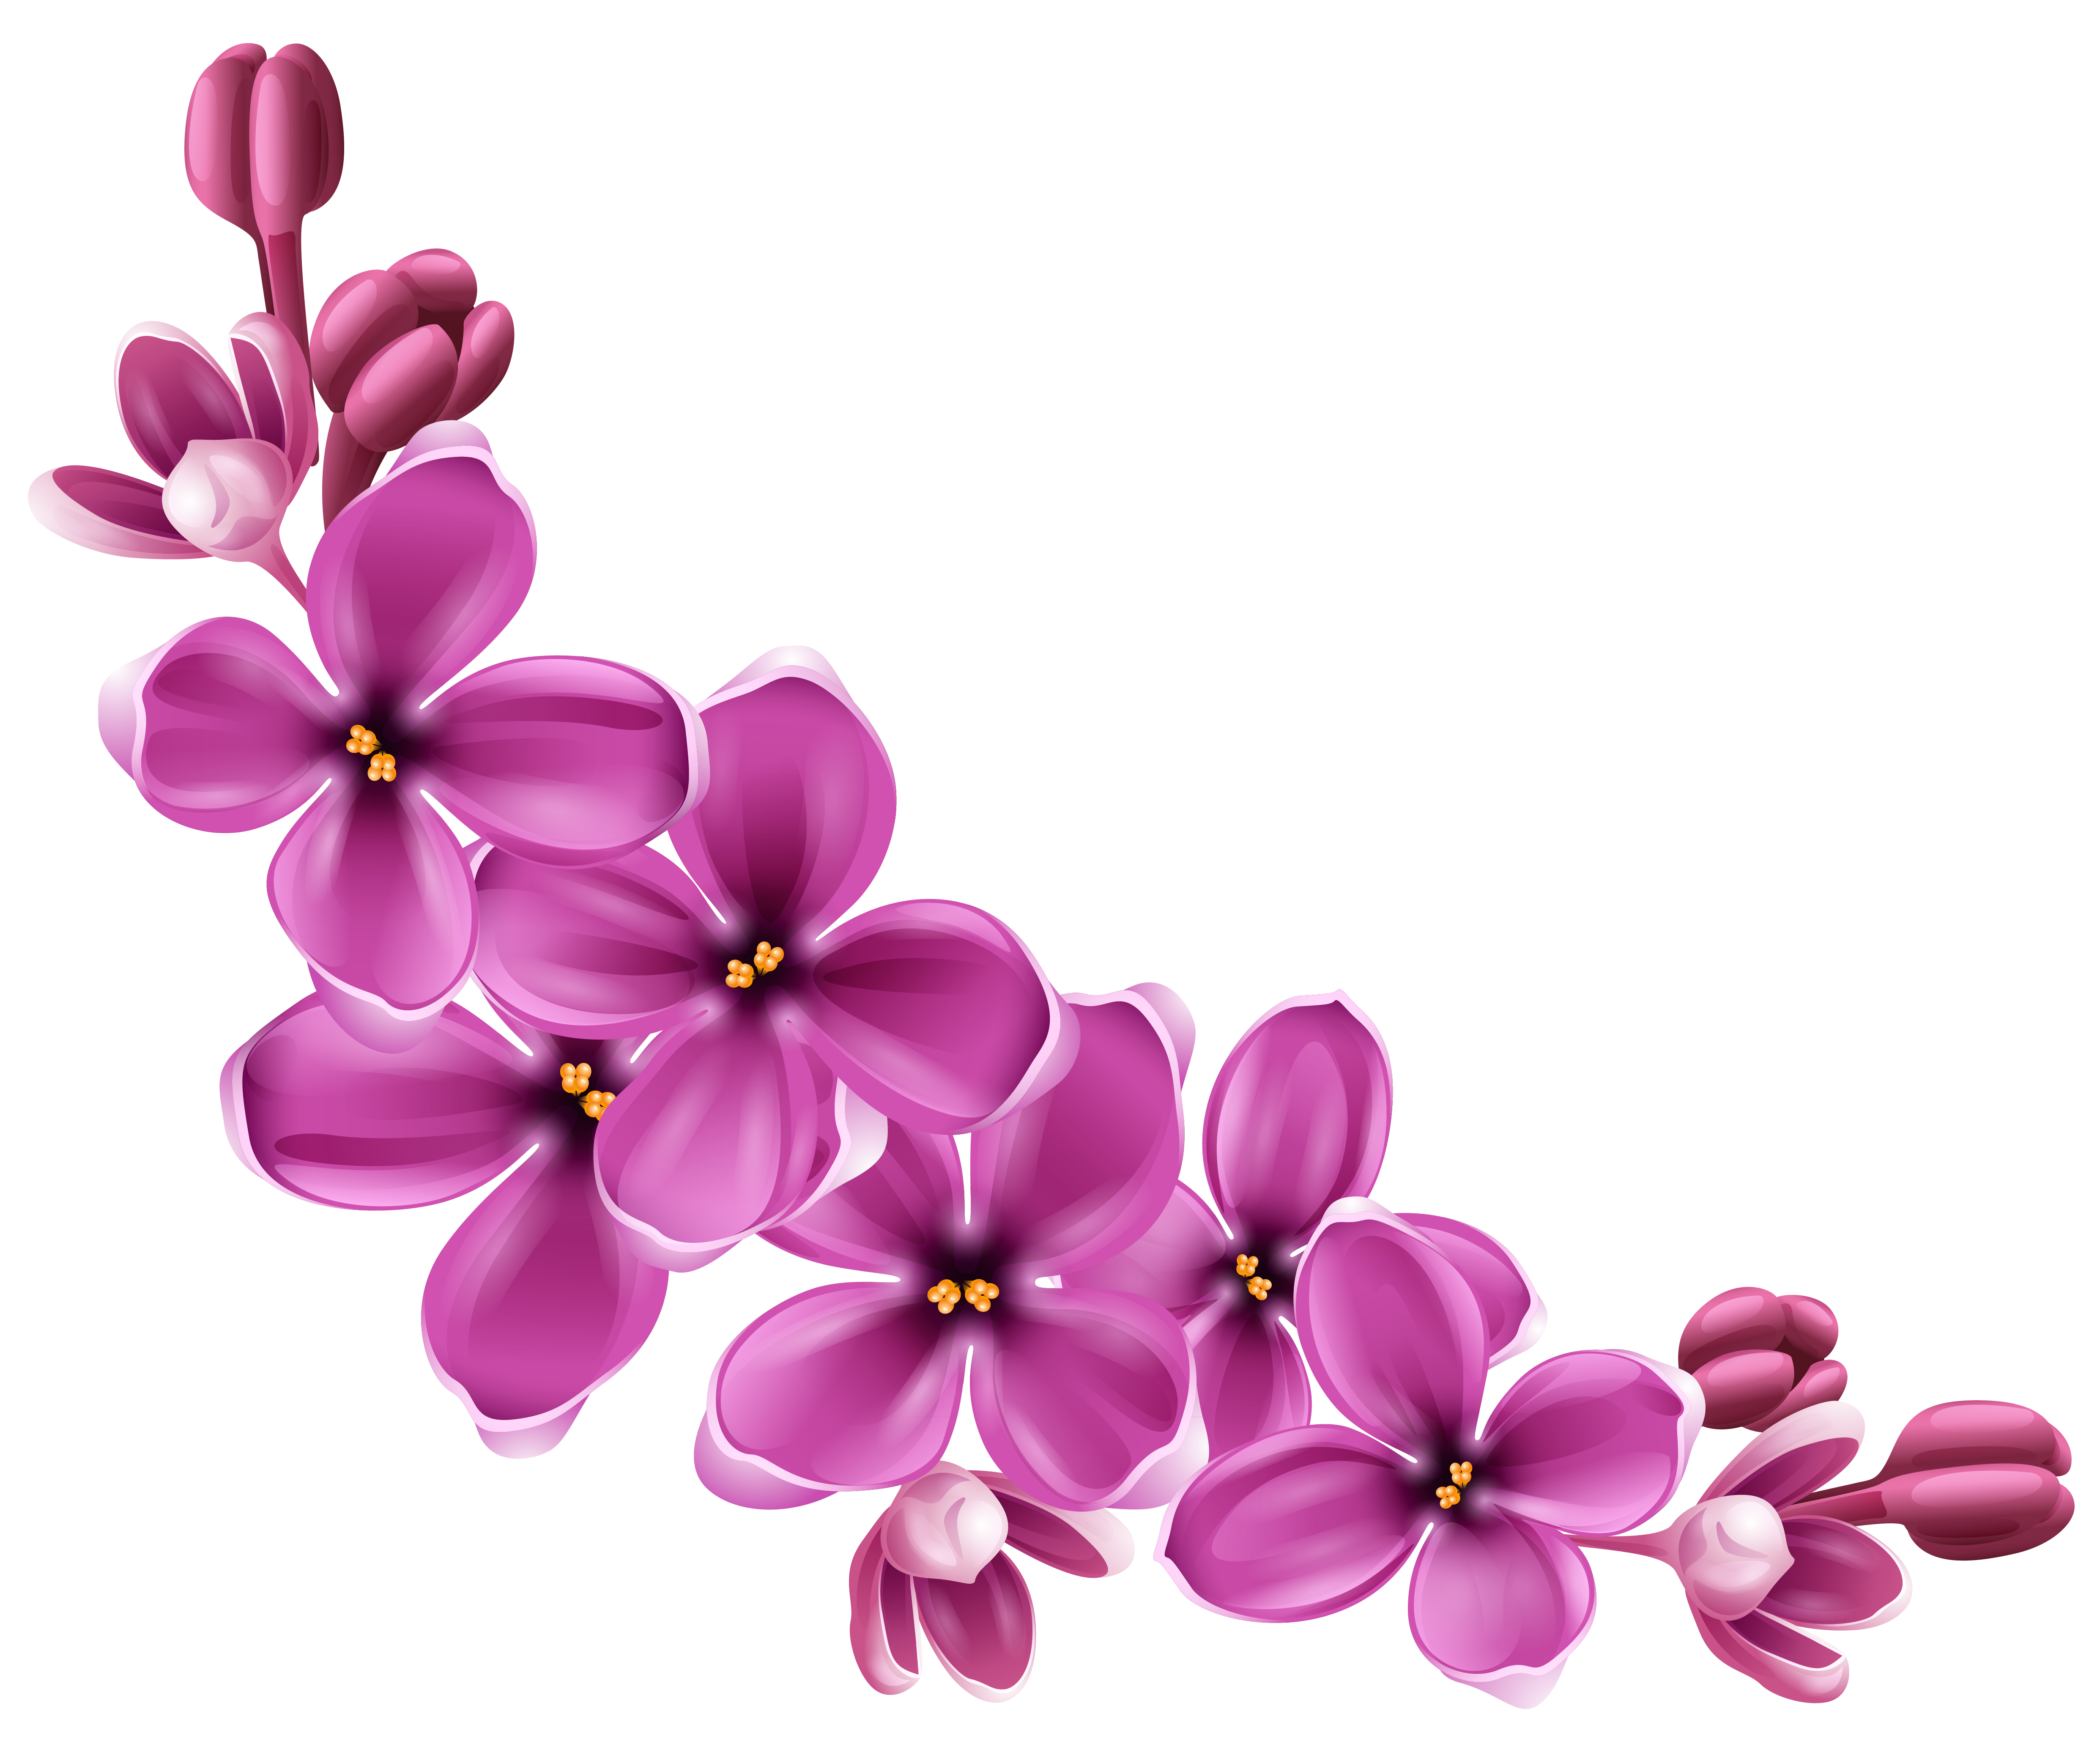 Download PNG image - Spring Blossom Flower PNG Transparent Image 